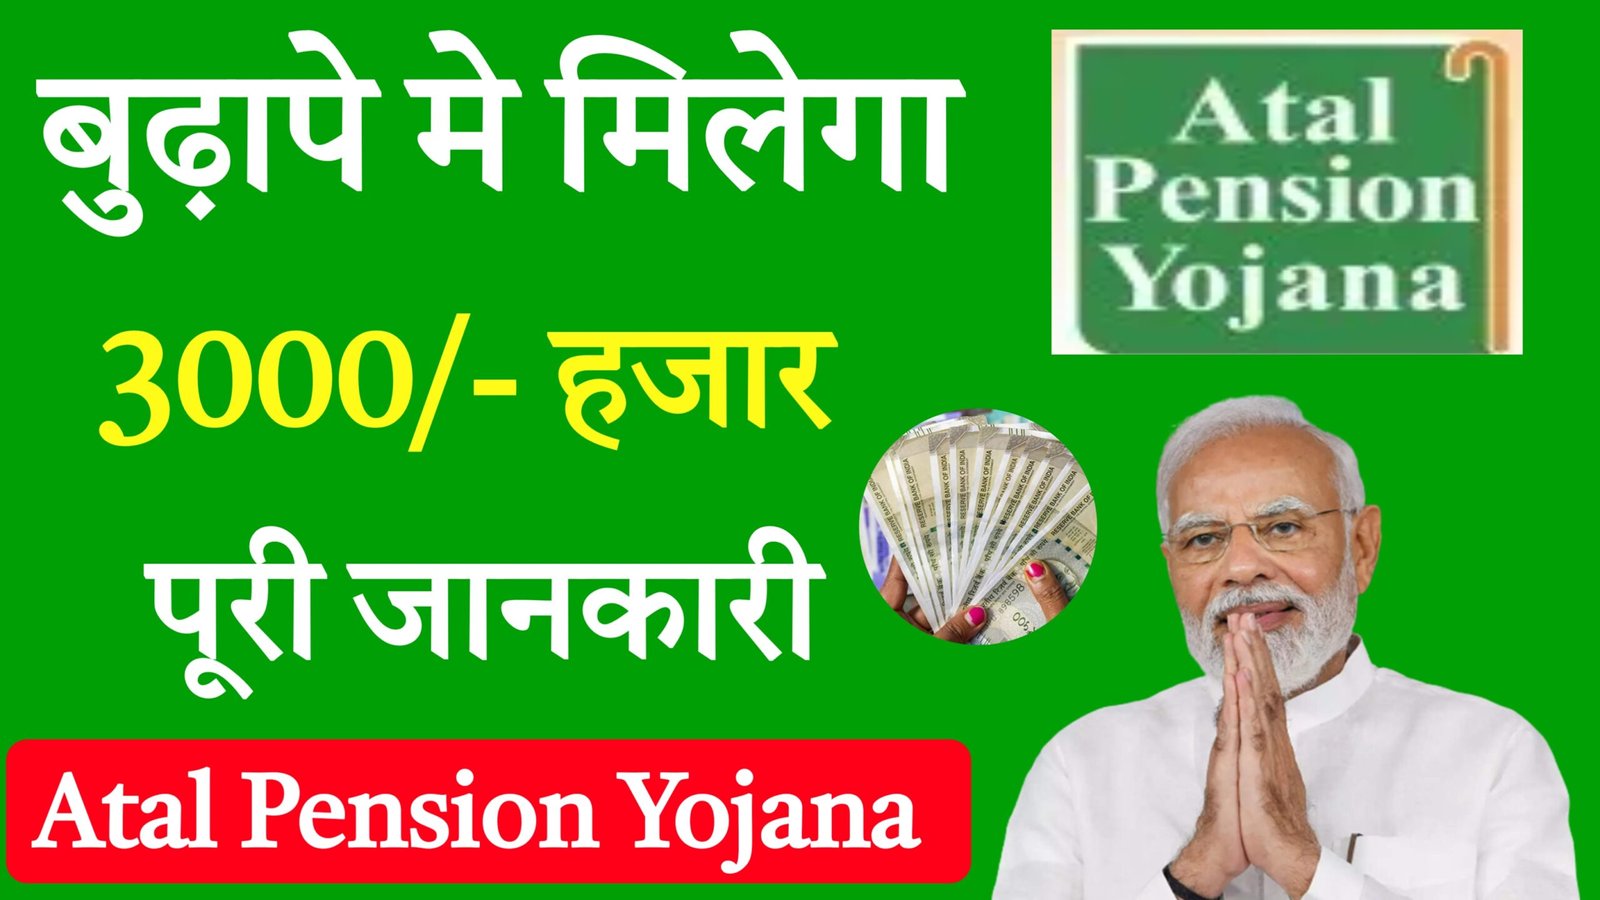 Atal Pension Yojana in Hindi